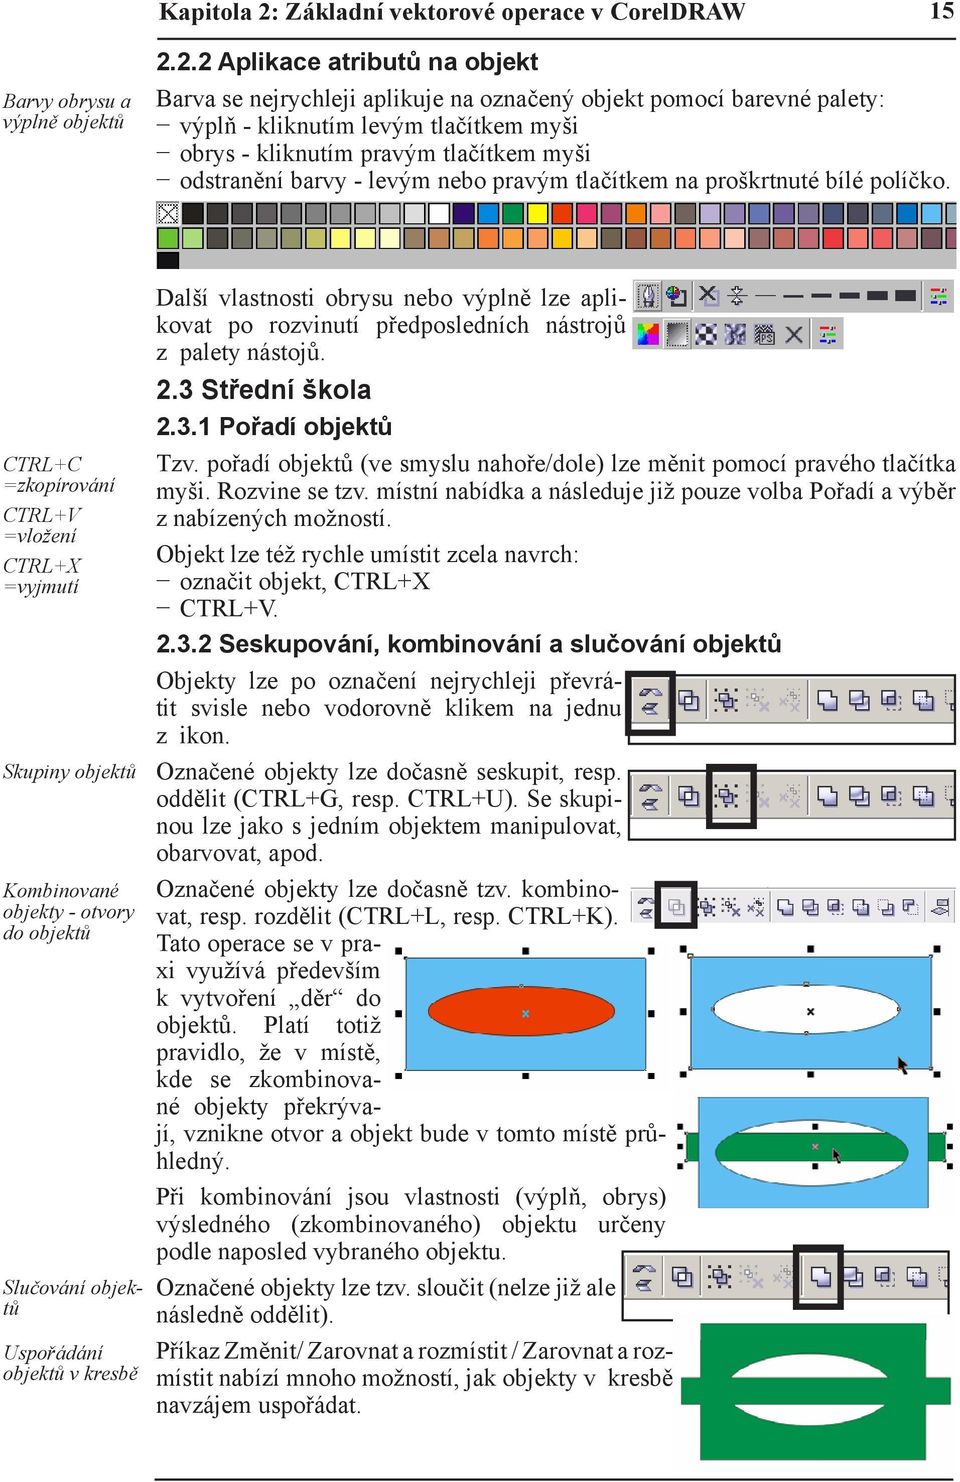 2.2 Aplikace atributů na objekt Barva se nejrychleji aplikuje na označený objekt pomocí barevné palety: výplň - kliknutím levým tlačítkem myši obrys - kliknutím pravým tlačítkem myši odstranění barvy